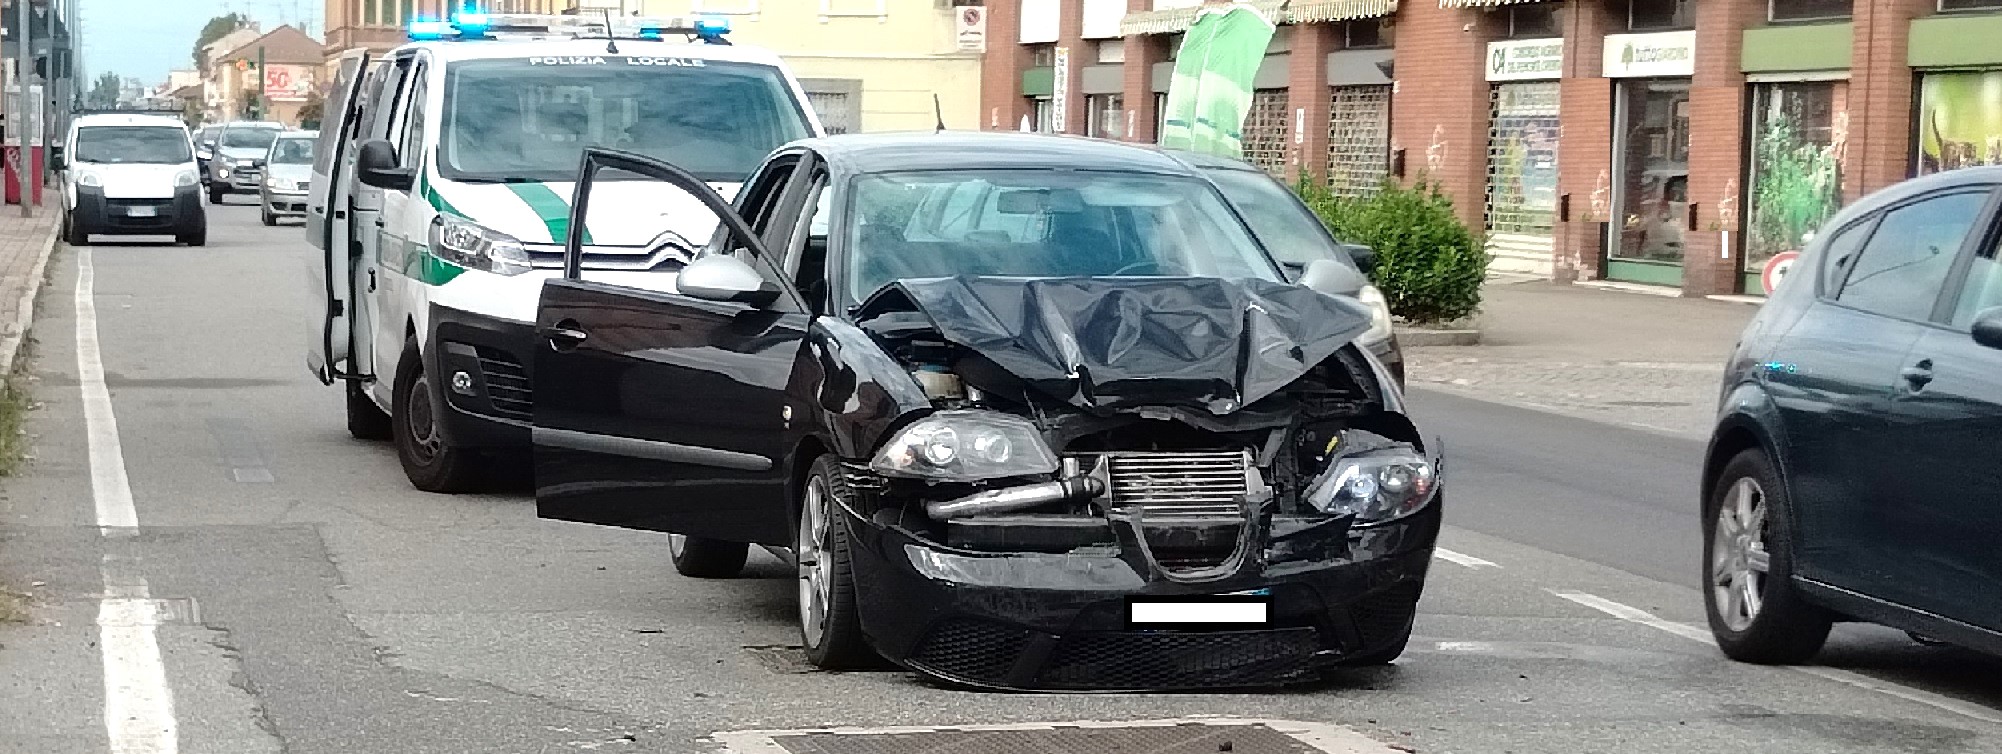 VERCELLI CORSO RANDACCIO – Incidente tra due veicoli – Nessun danno alle persone